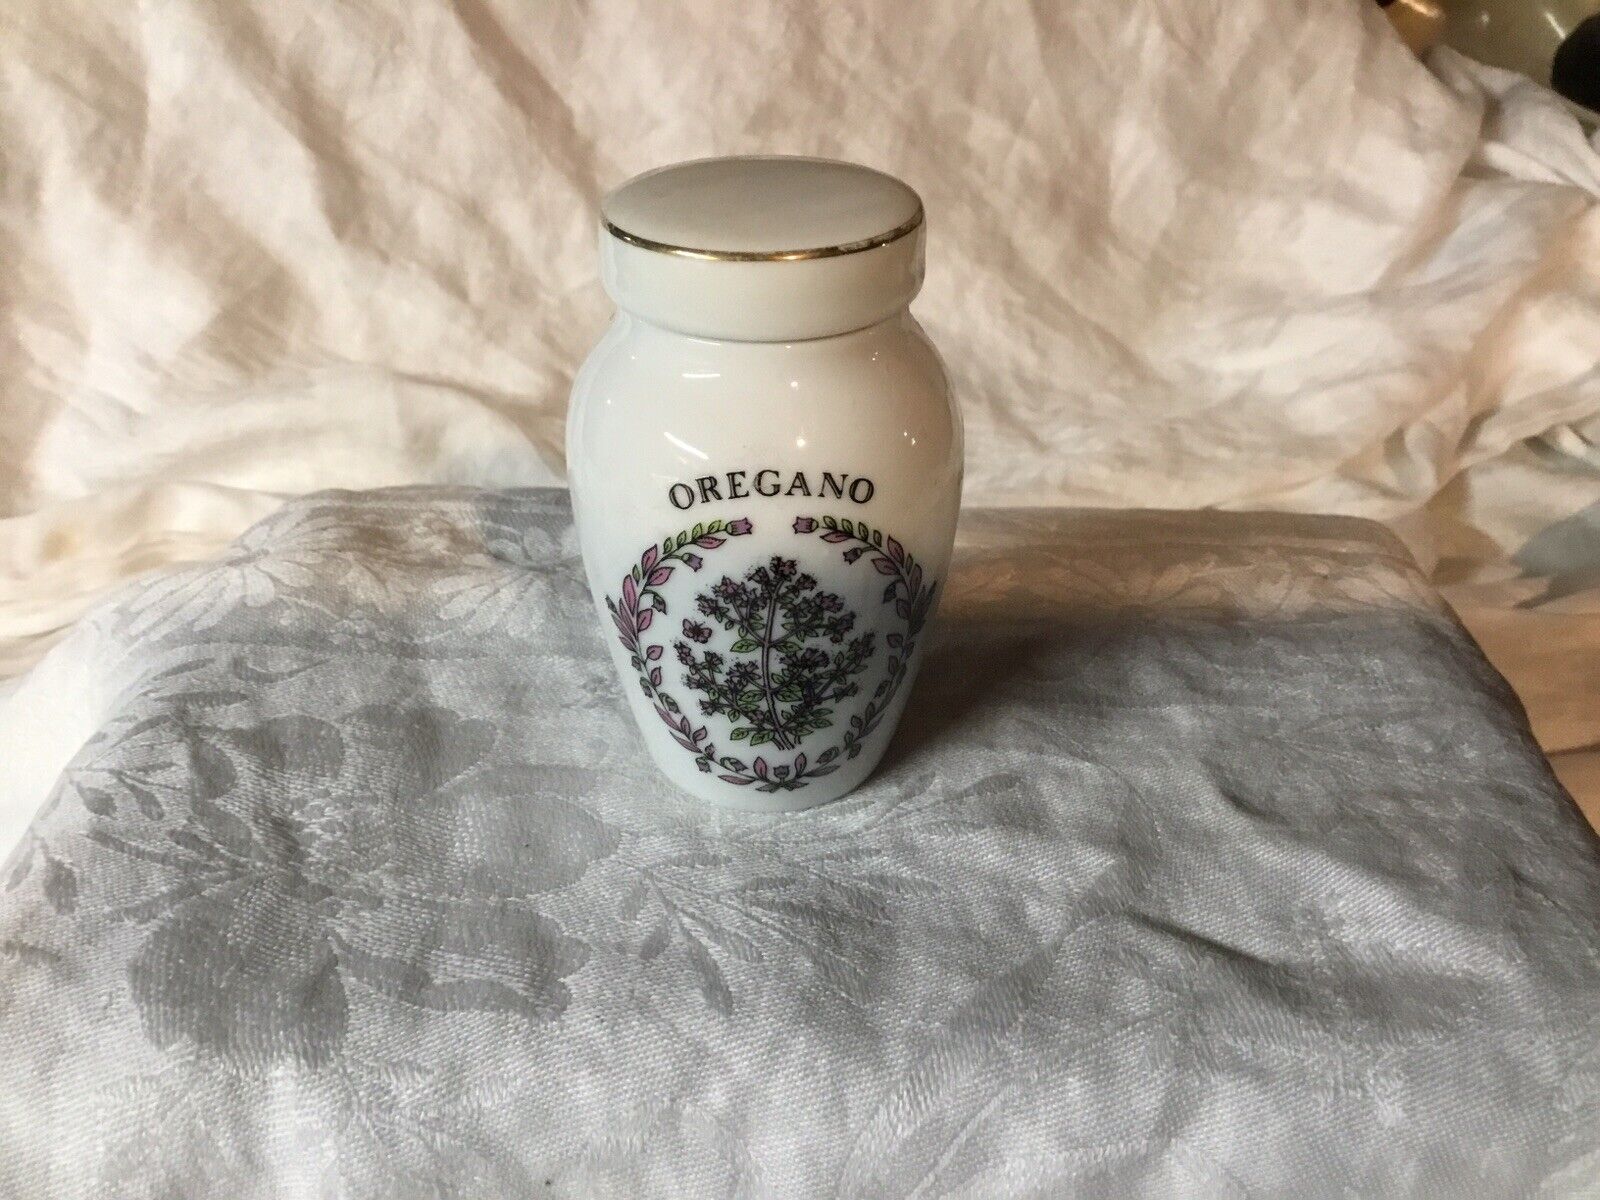 Vtg 1985 Franklin Mint Gloria Concepts Inc OREGANO Porcelain Spice Jar Lid EUC